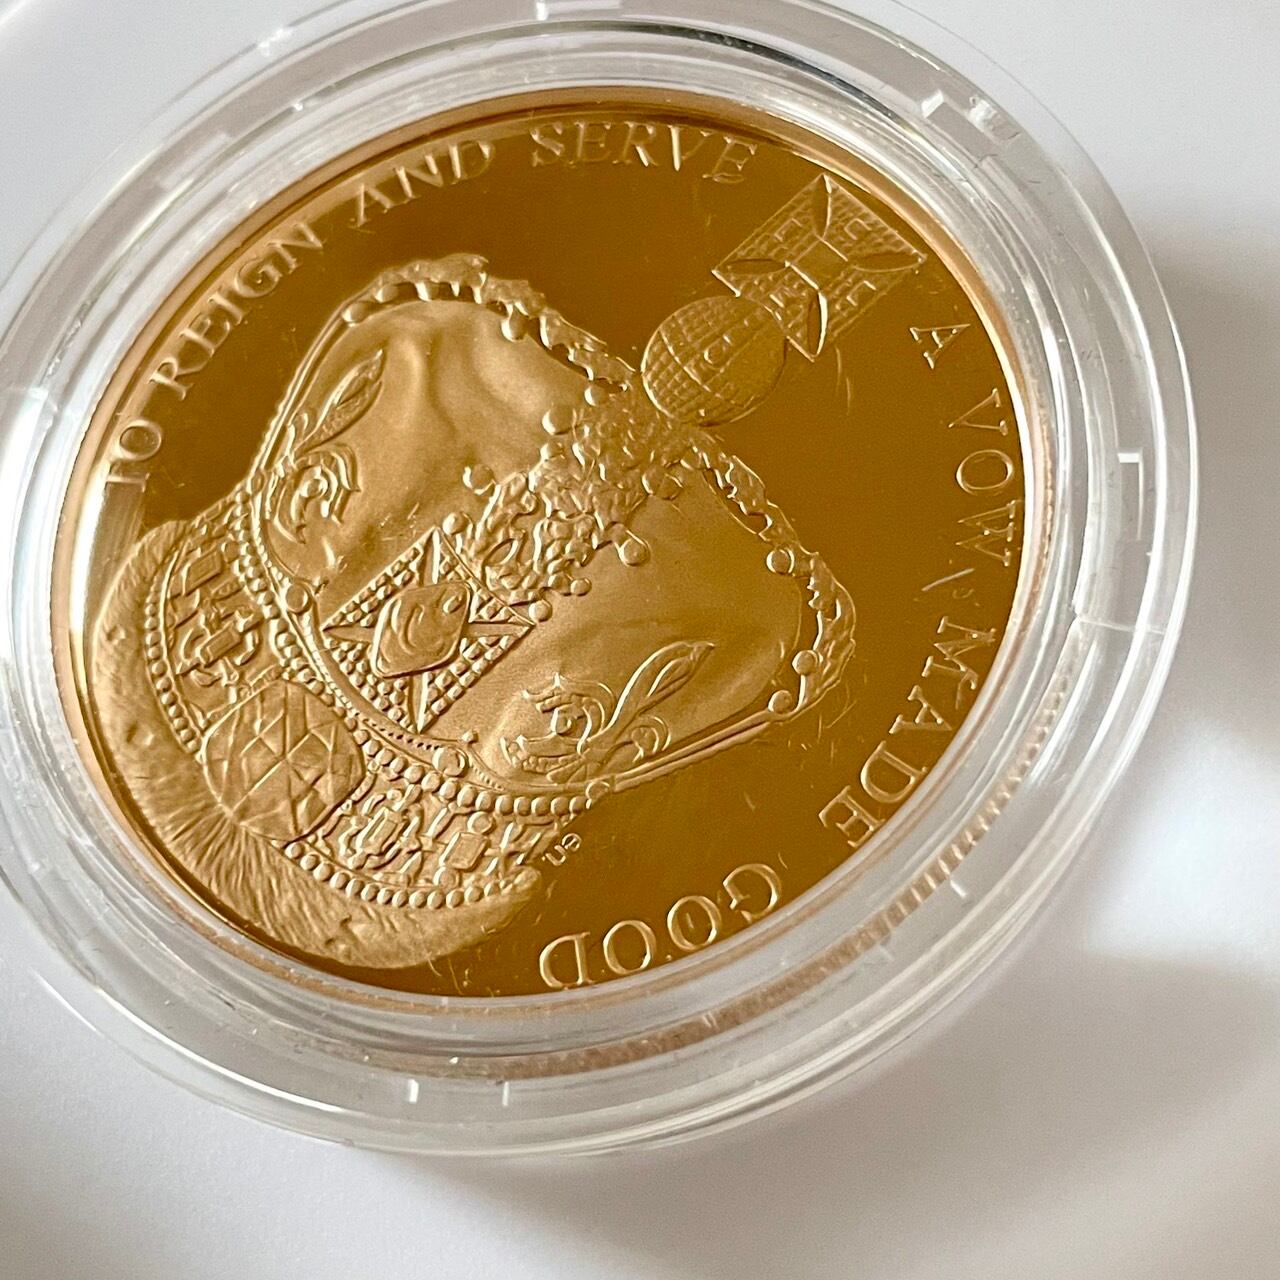 2013年エリザベス女王陛下の戴冠60周年記念 5ポンドプルーフ金貨 ...